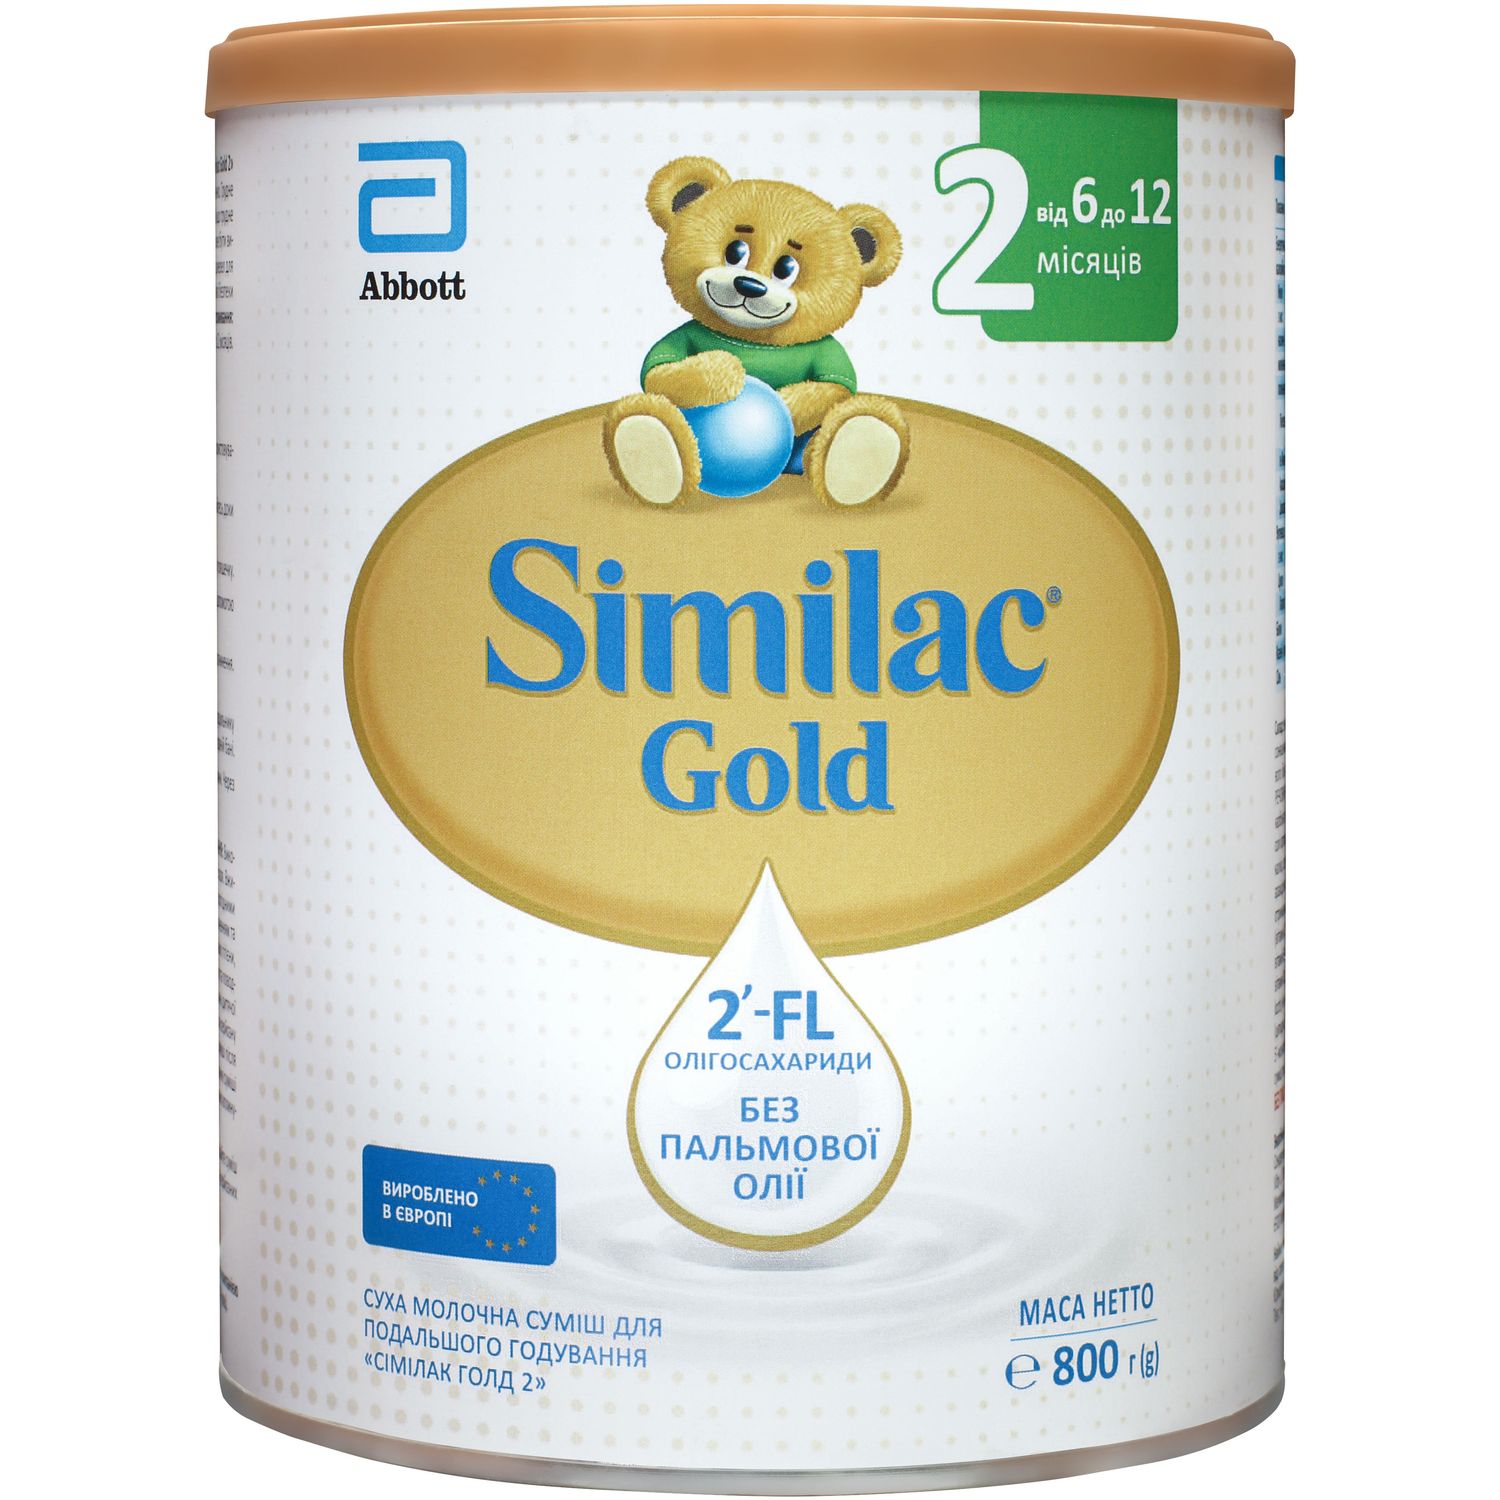 Суха молочна суміш Similac Gold 2, 800 г - фото 1